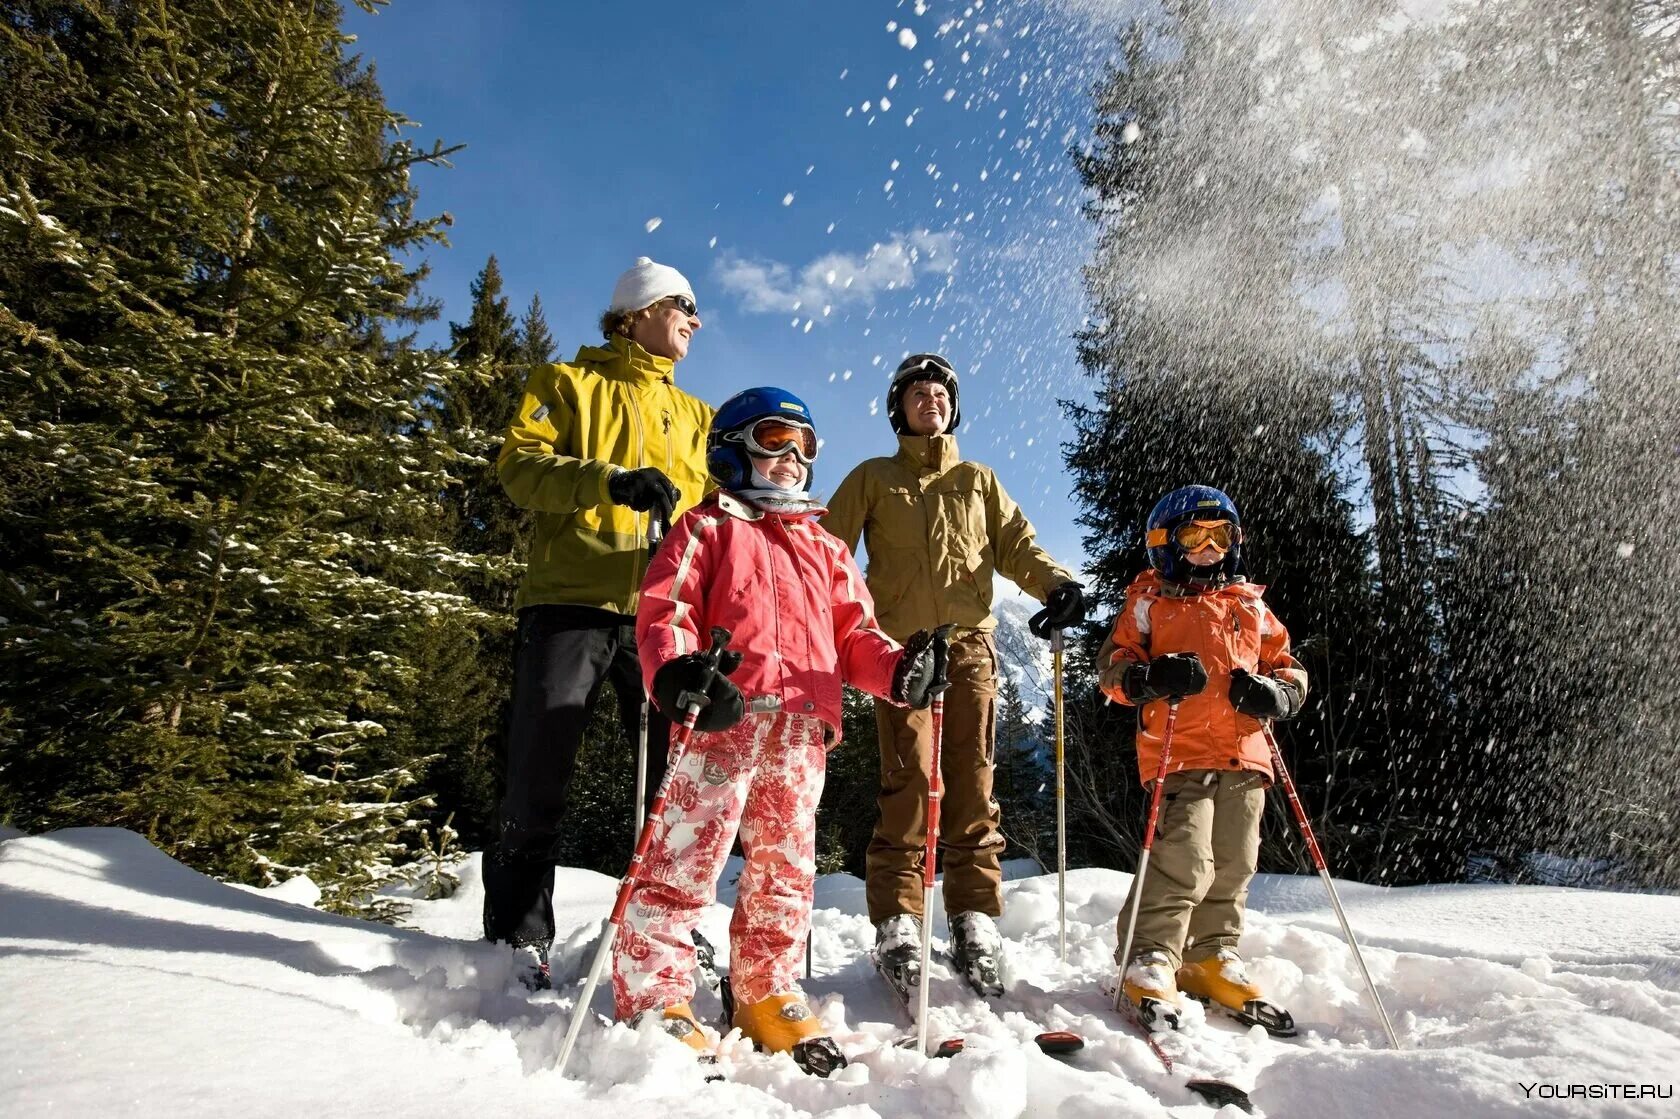 Здоровые развлечения. Прогулка на лыжах. Семья катается на лыжах. Дети катаются на лыжах. Зимний отдых.